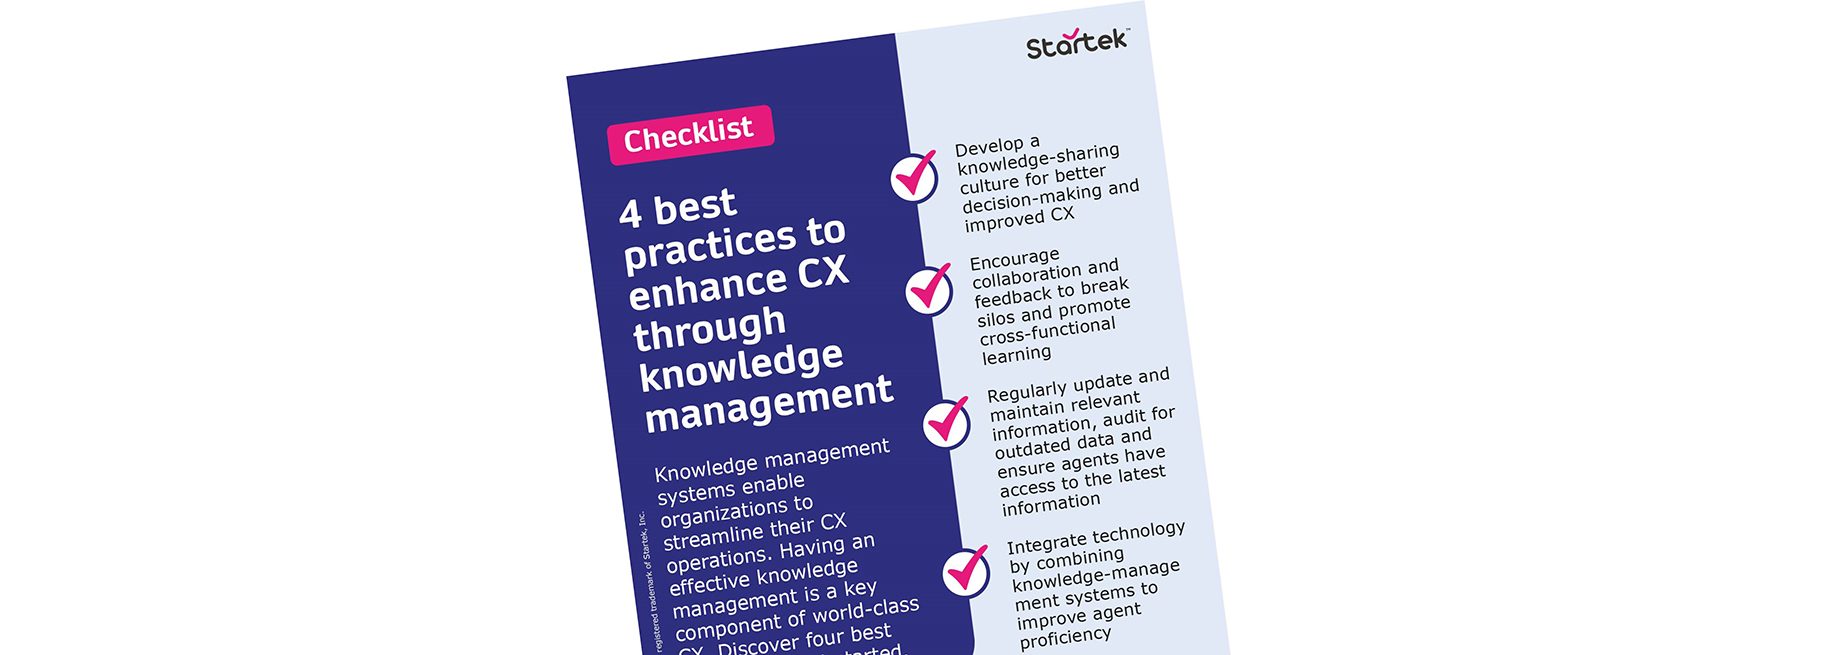 Knowledge management checklist 2023 banner